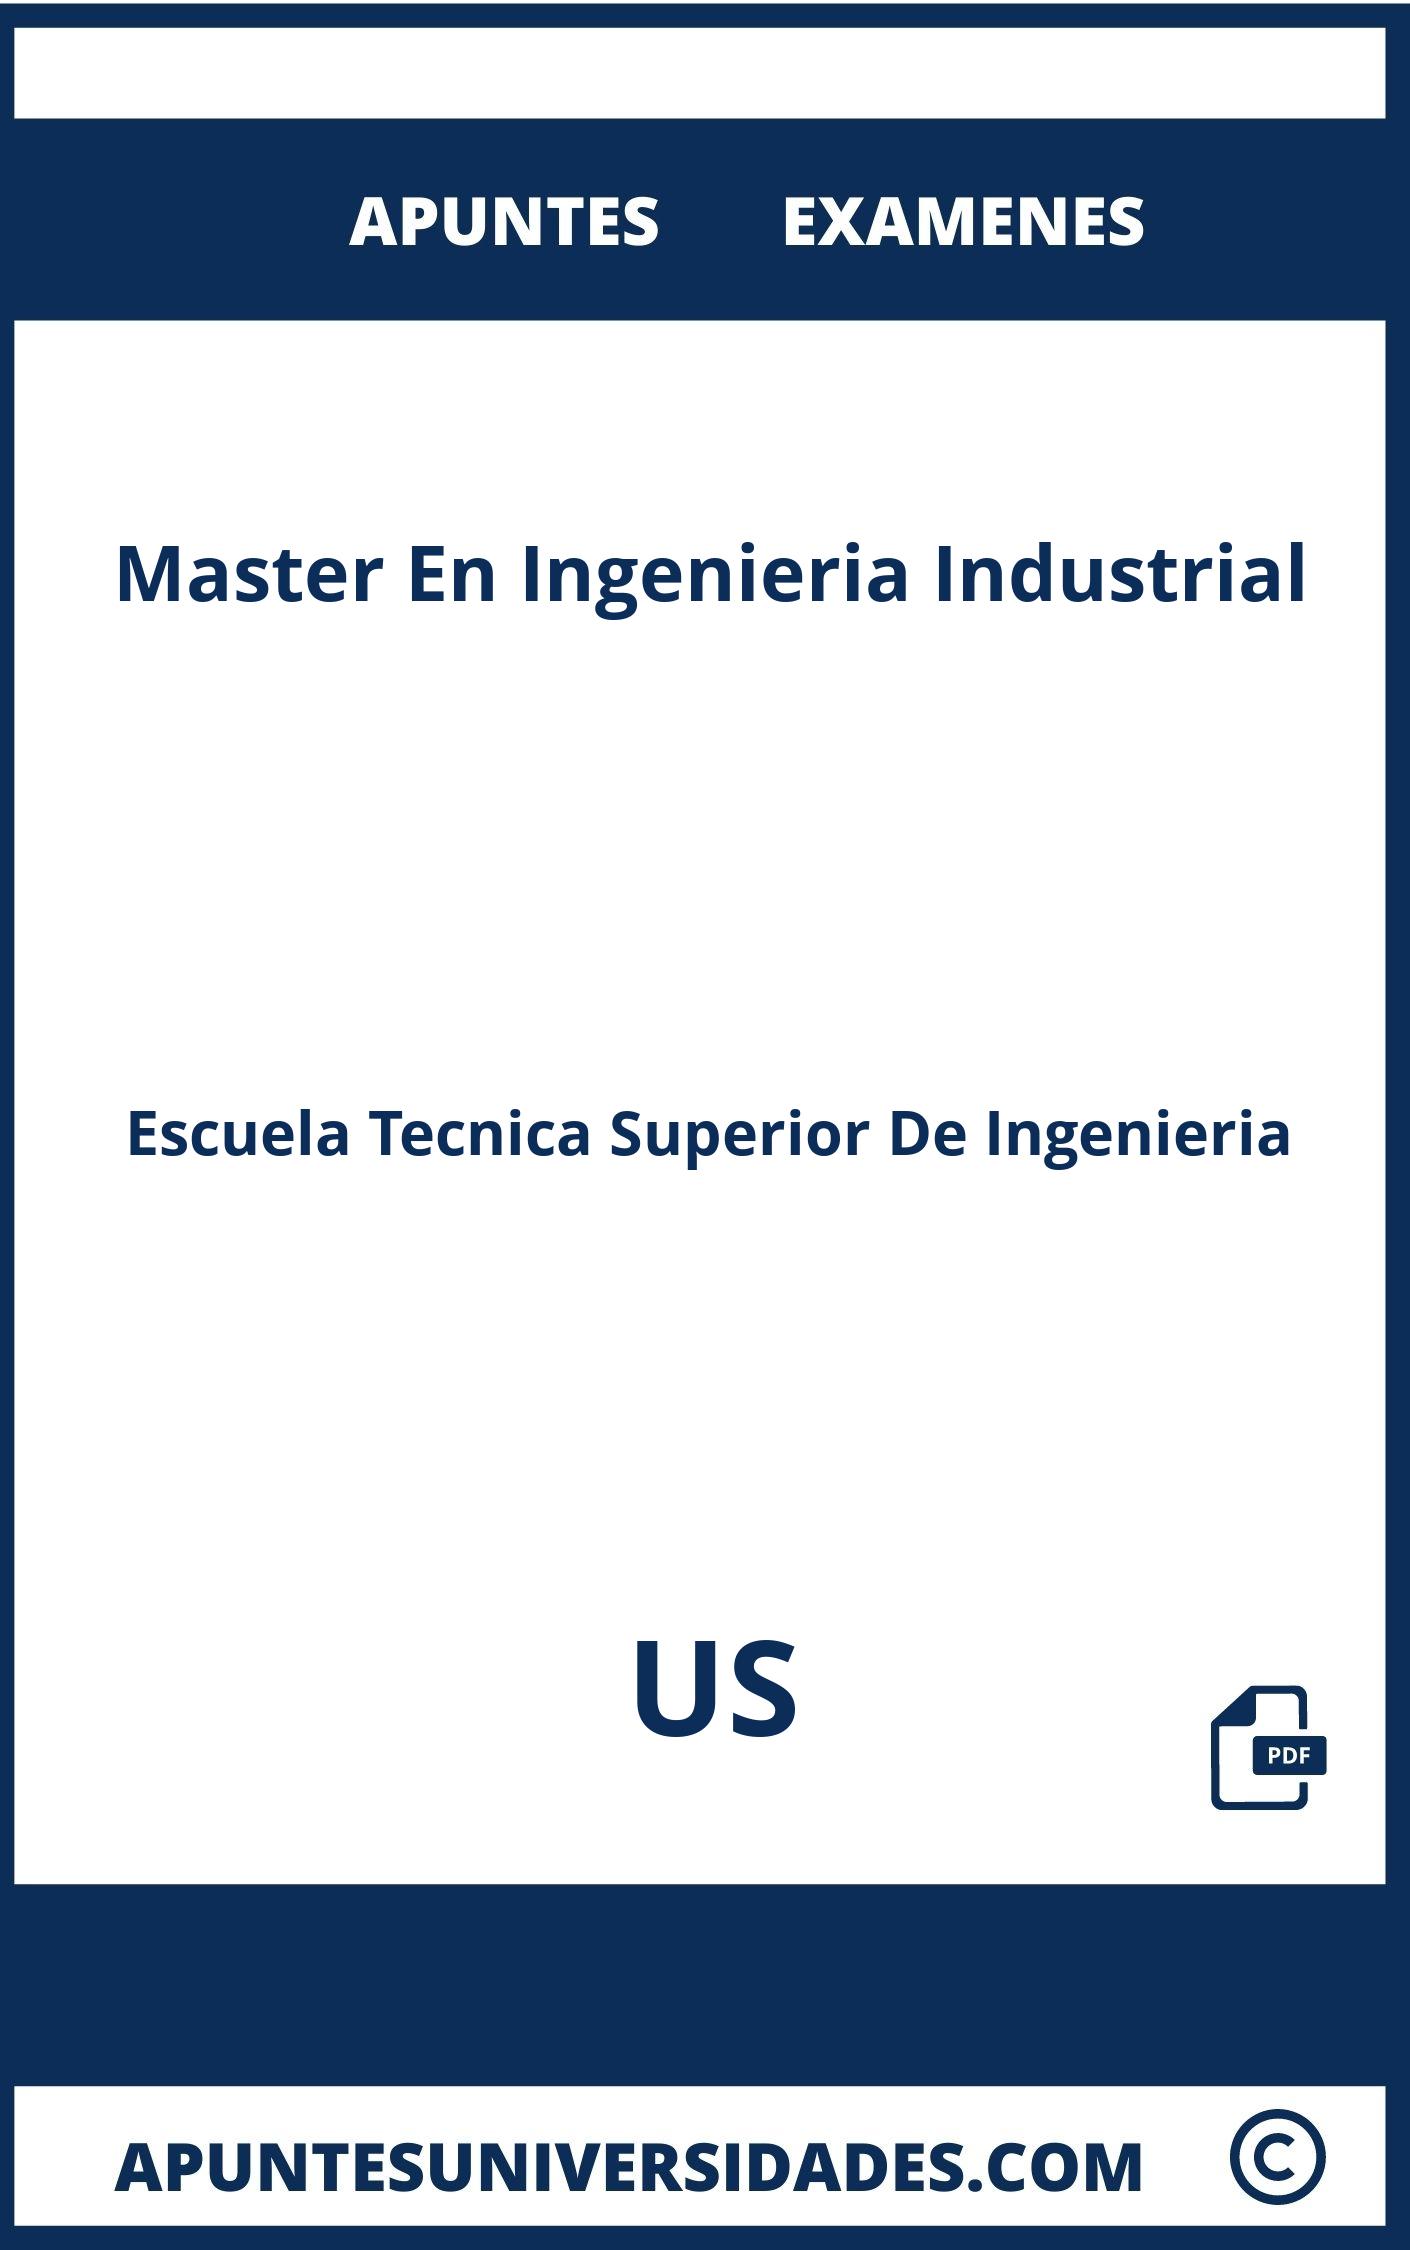 Examenes y Apuntes Master En Ingenieria Industrial US